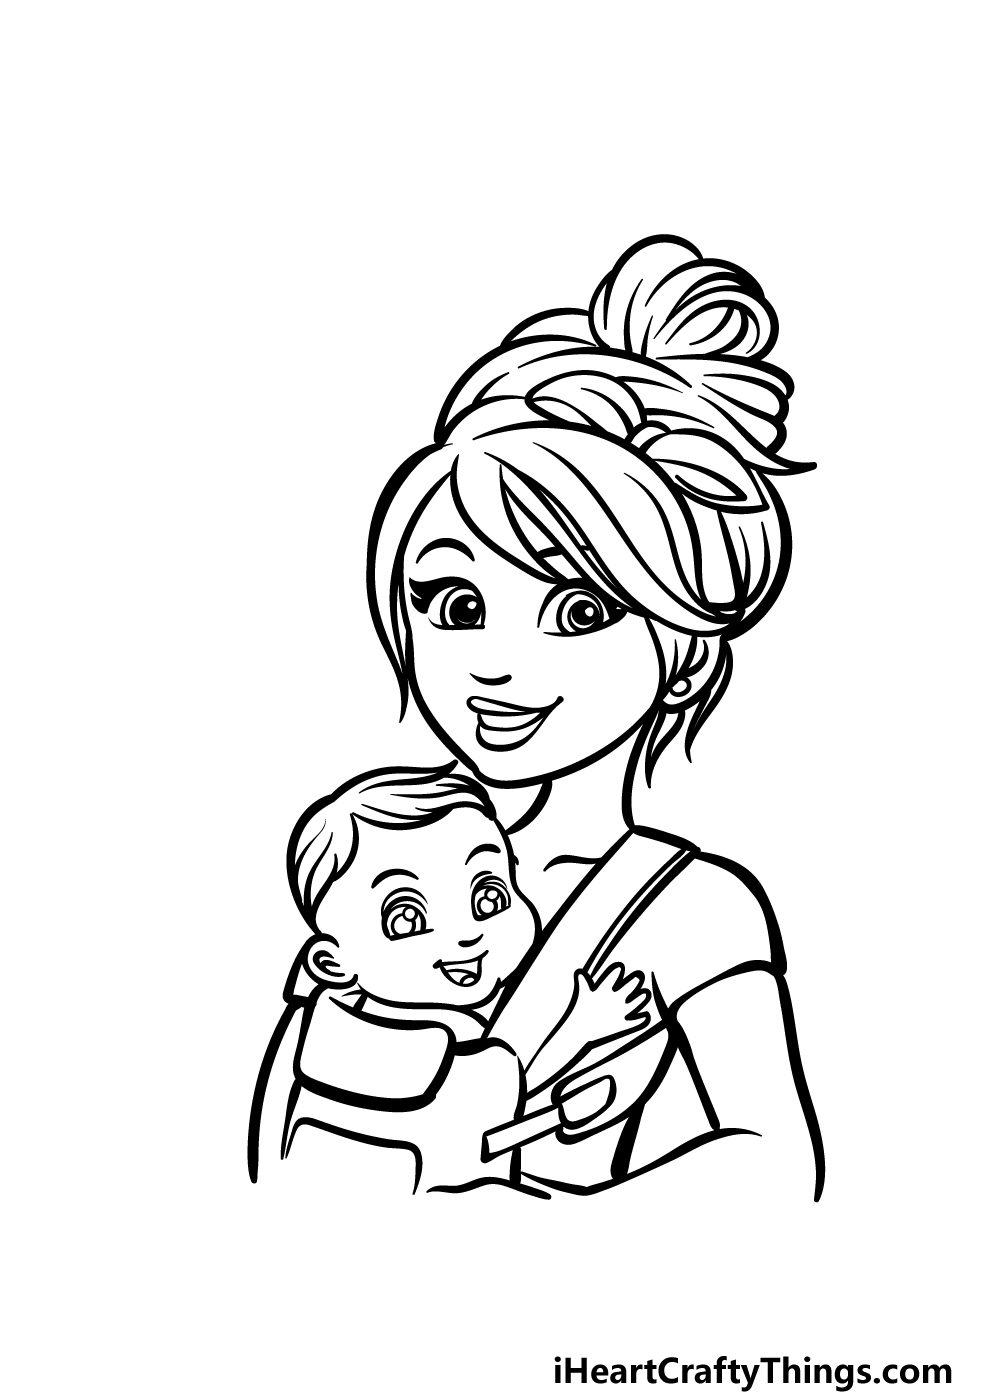 how to draw a cartoon mom step 5